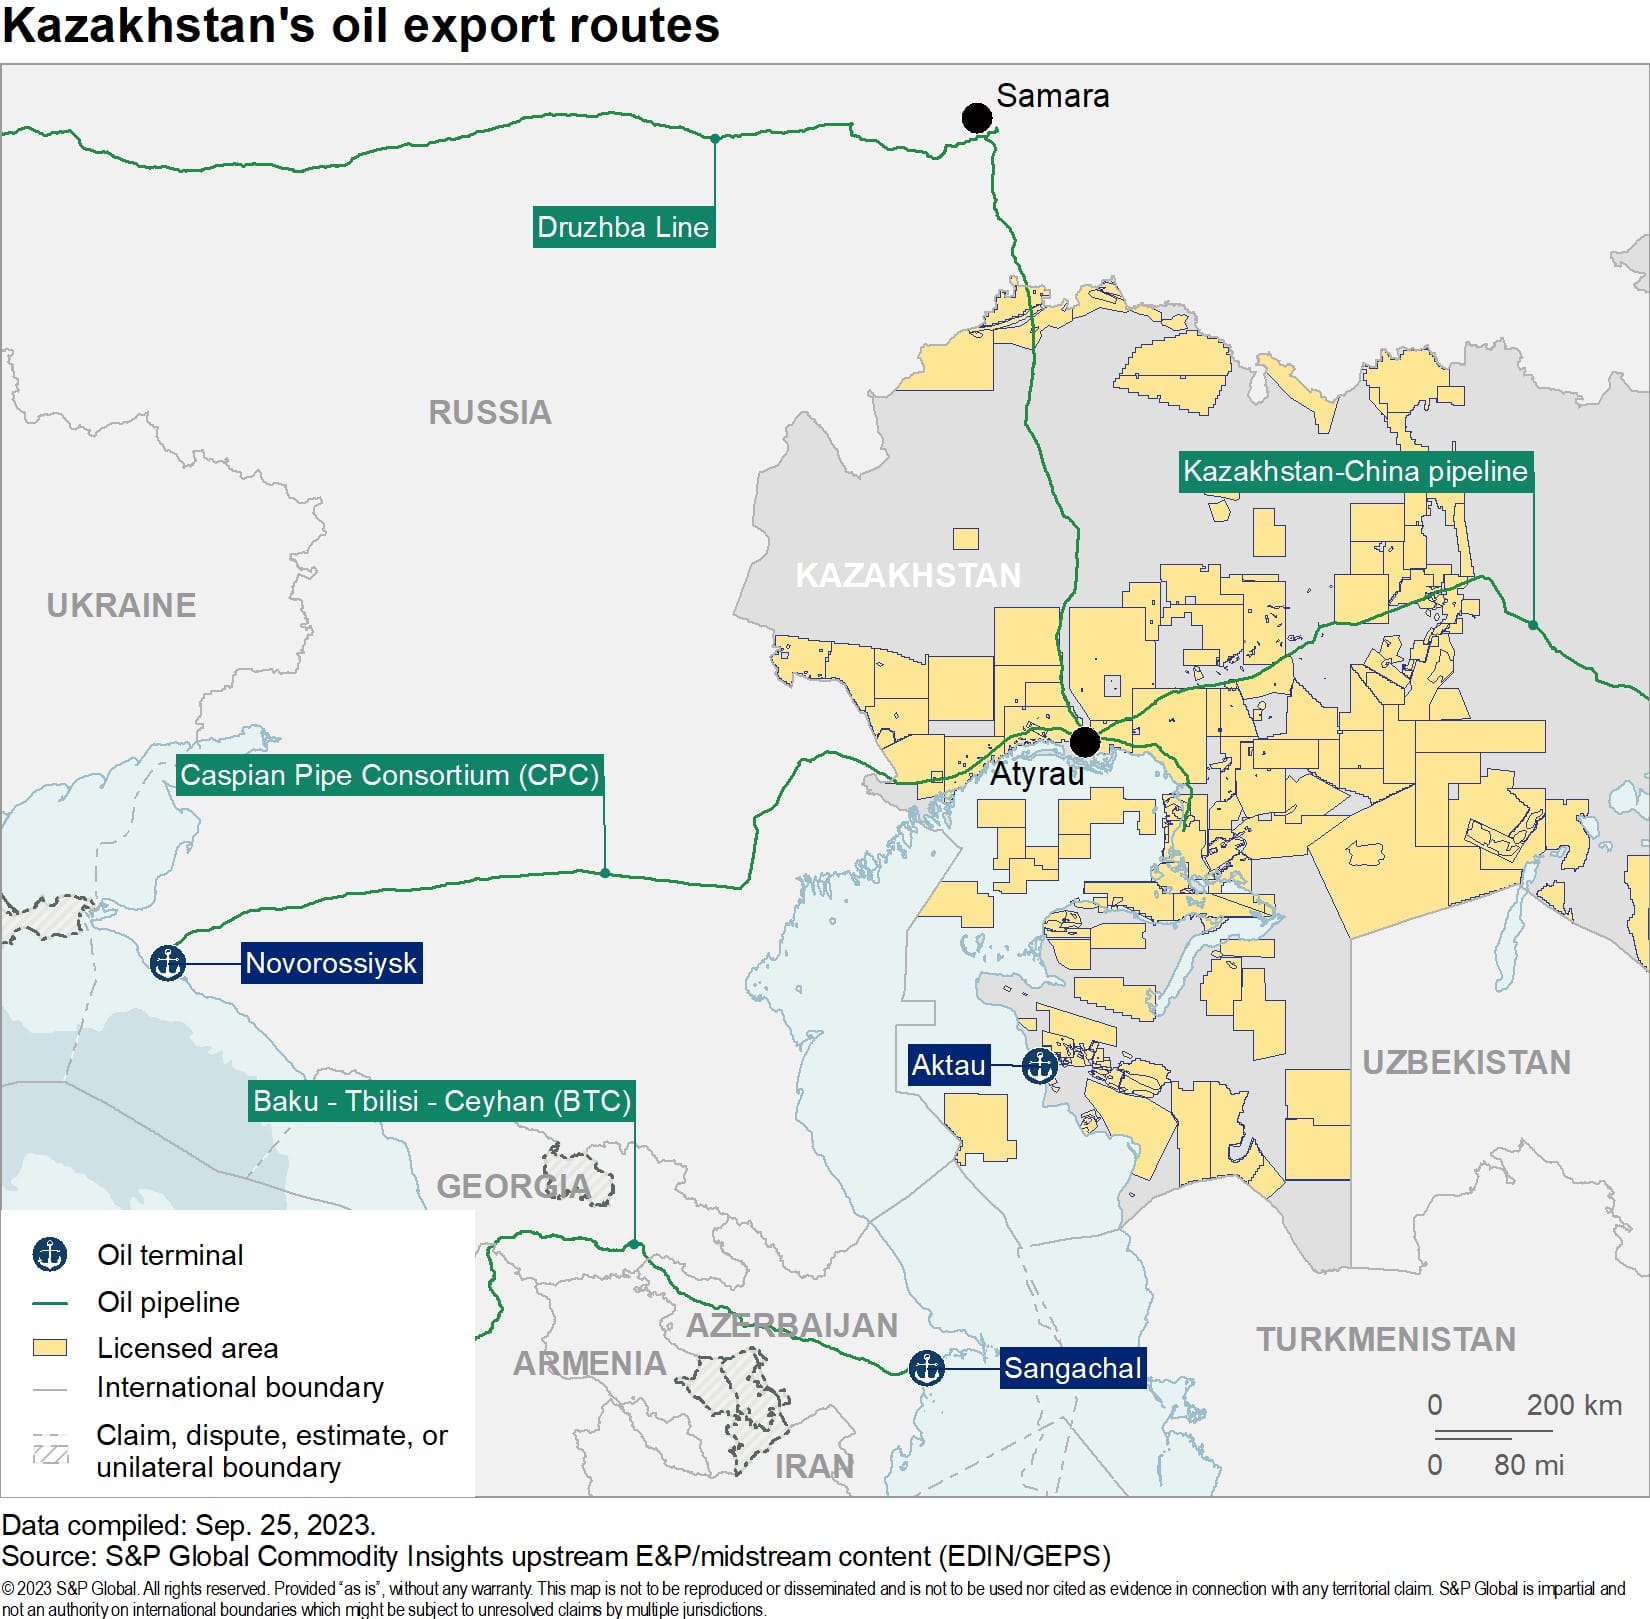 Kazakhstan's oil export routes